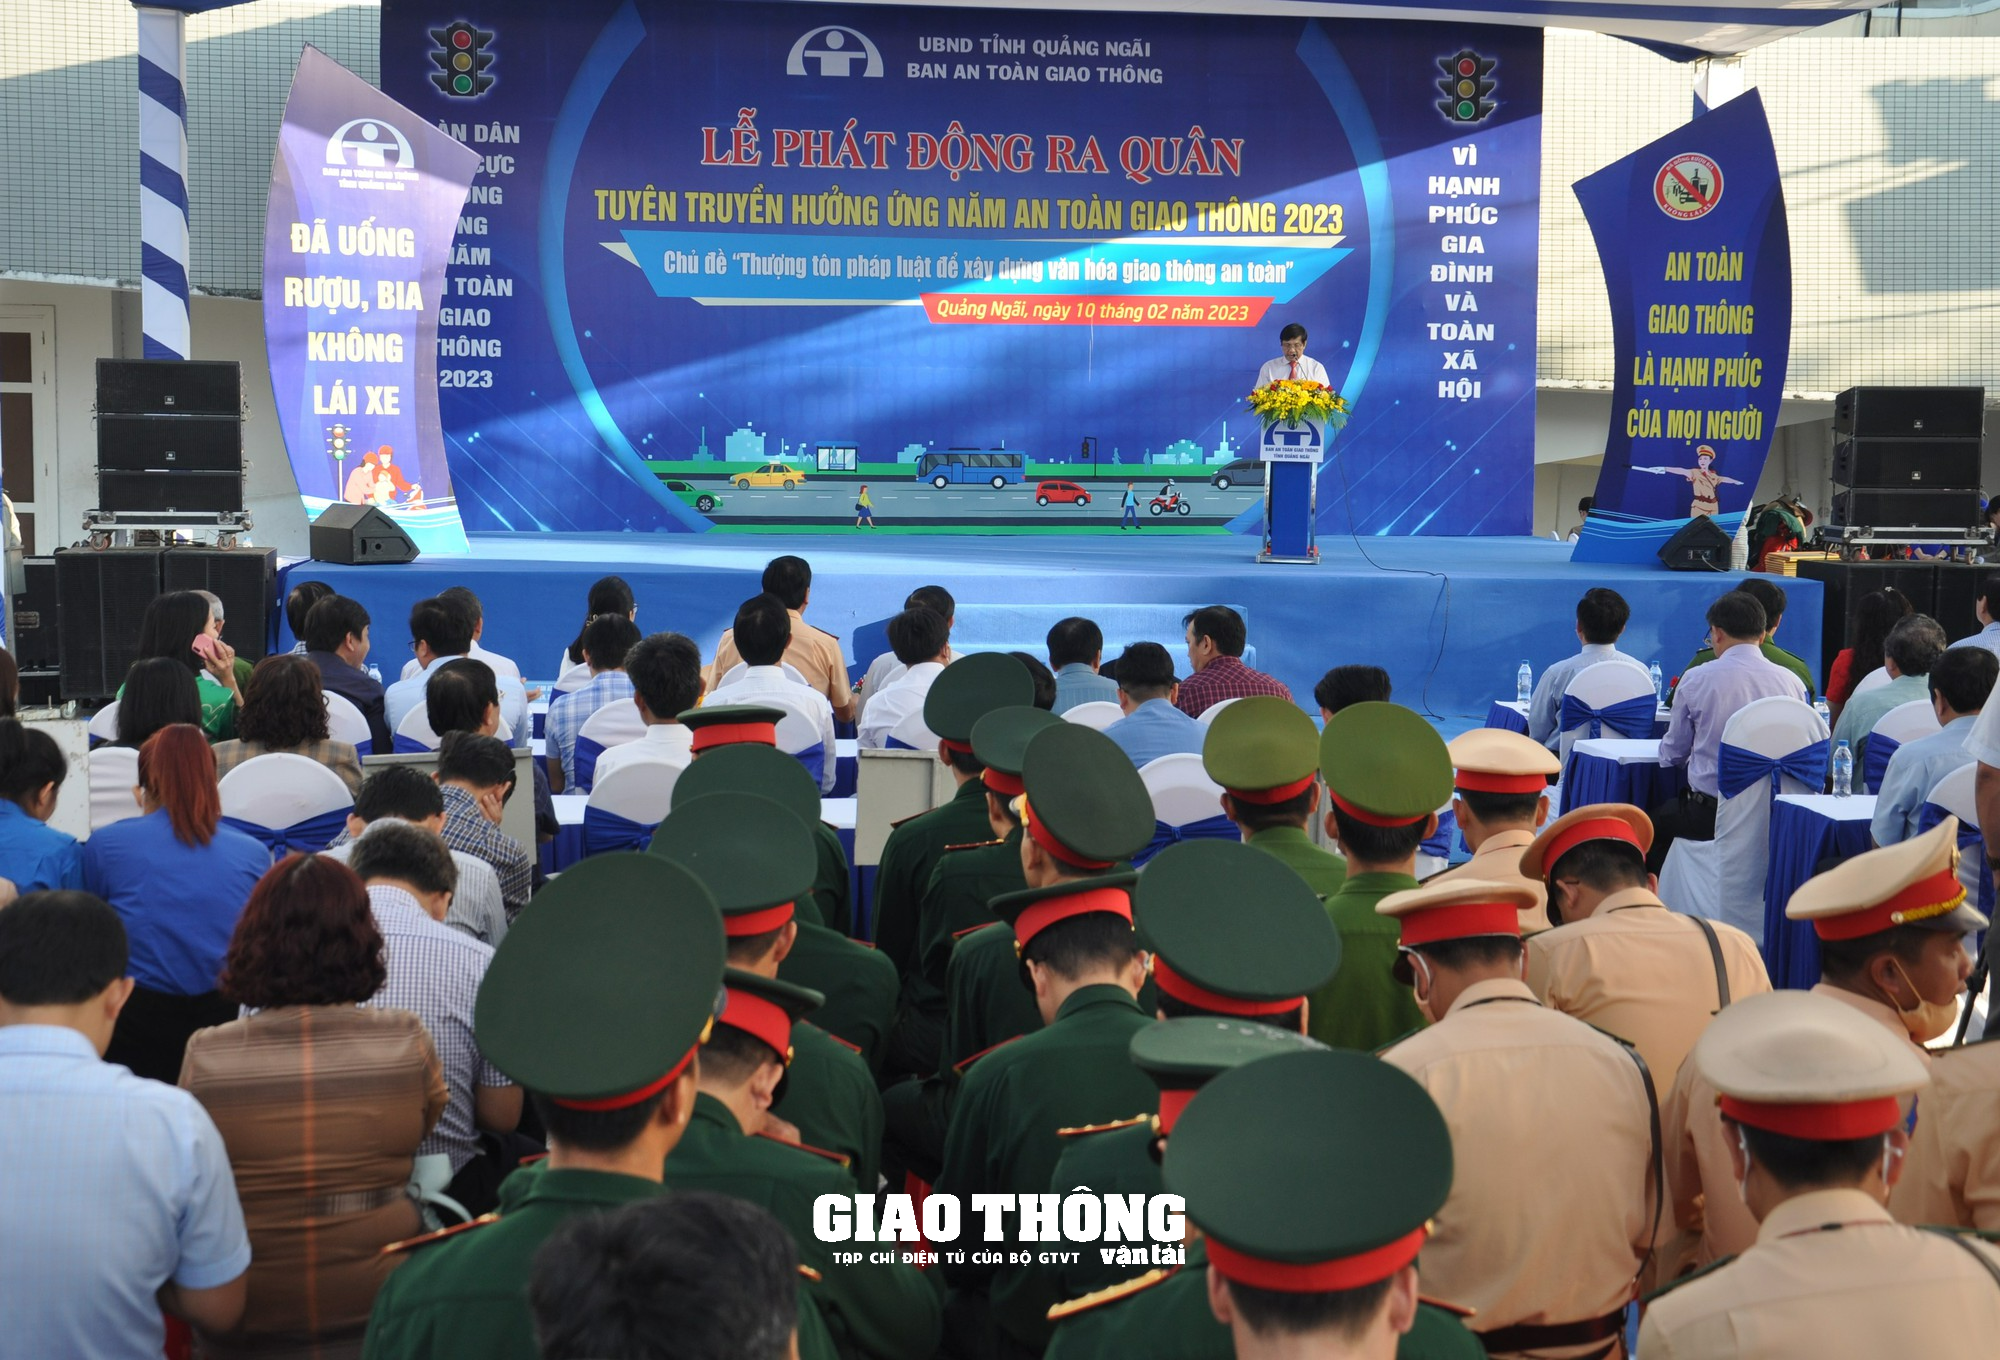 Cận cảnh Lễ phát động ra quân tuyên truyền hưởng ứng năm ATGT 2023 ở Quảng Ngãi - Ảnh 3.